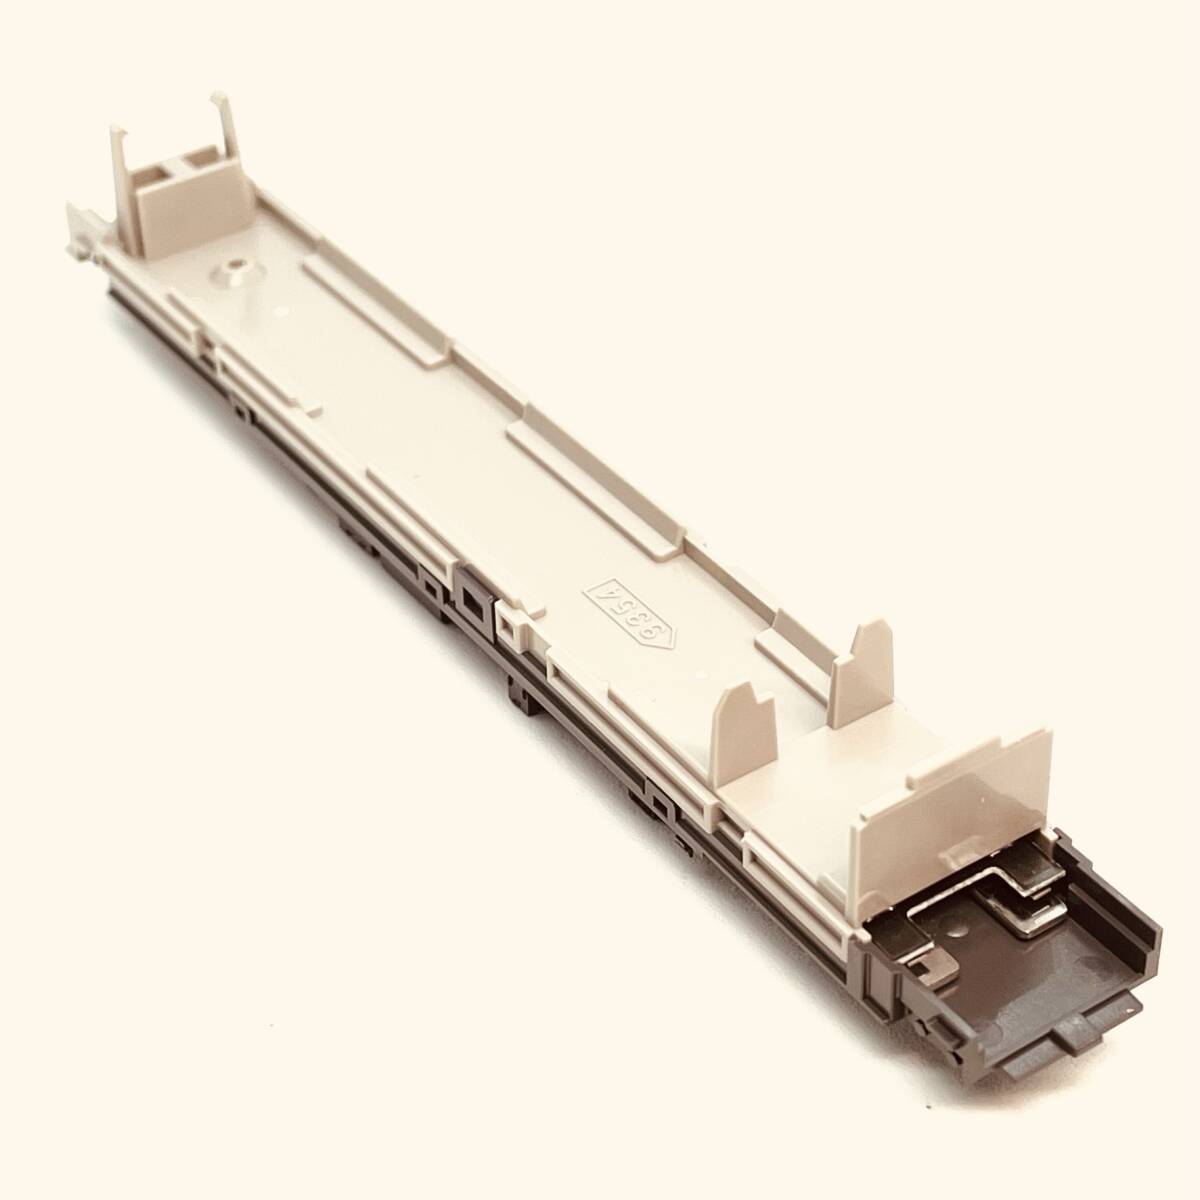 TOMIX 12000用 シート+ウェイト+床板+ライトLED基盤 1両分入り 98357 相模鉄道 12000系基本セットからのバラシ_入札個数1でのお渡し内容です。